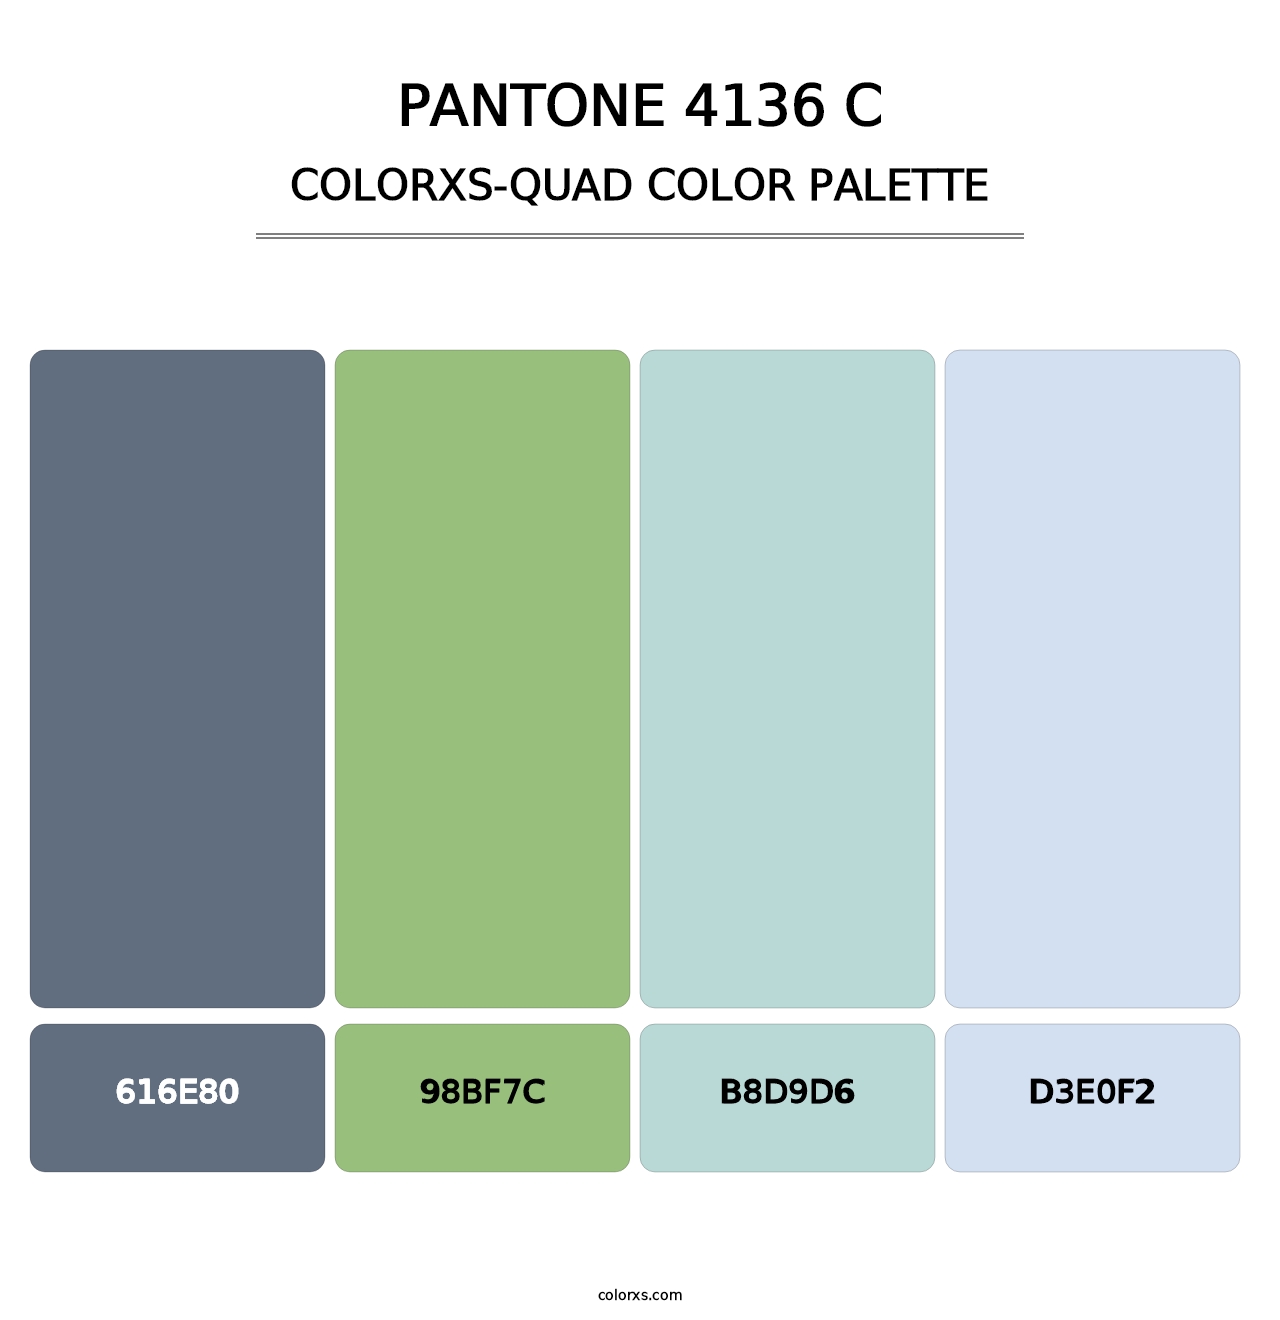 PANTONE 4136 C - Colorxs Quad Palette